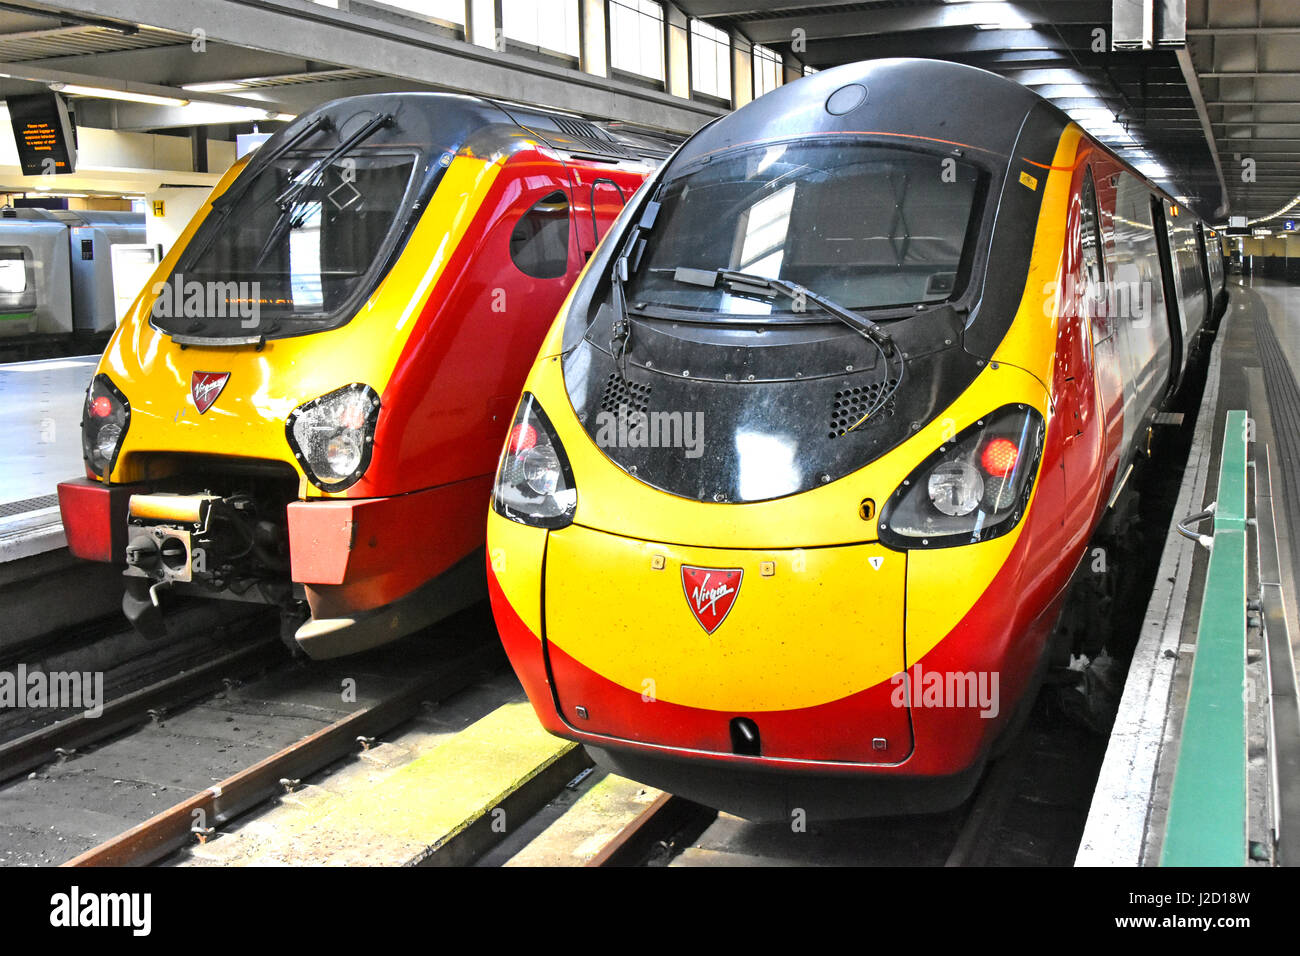 Zwei schlanke Jungfrau Zug Einheiten betrieben von Jungfrau-Züge bei Euston Station Bahnsteige London England UK bieten inter ÖPNV Stockfoto